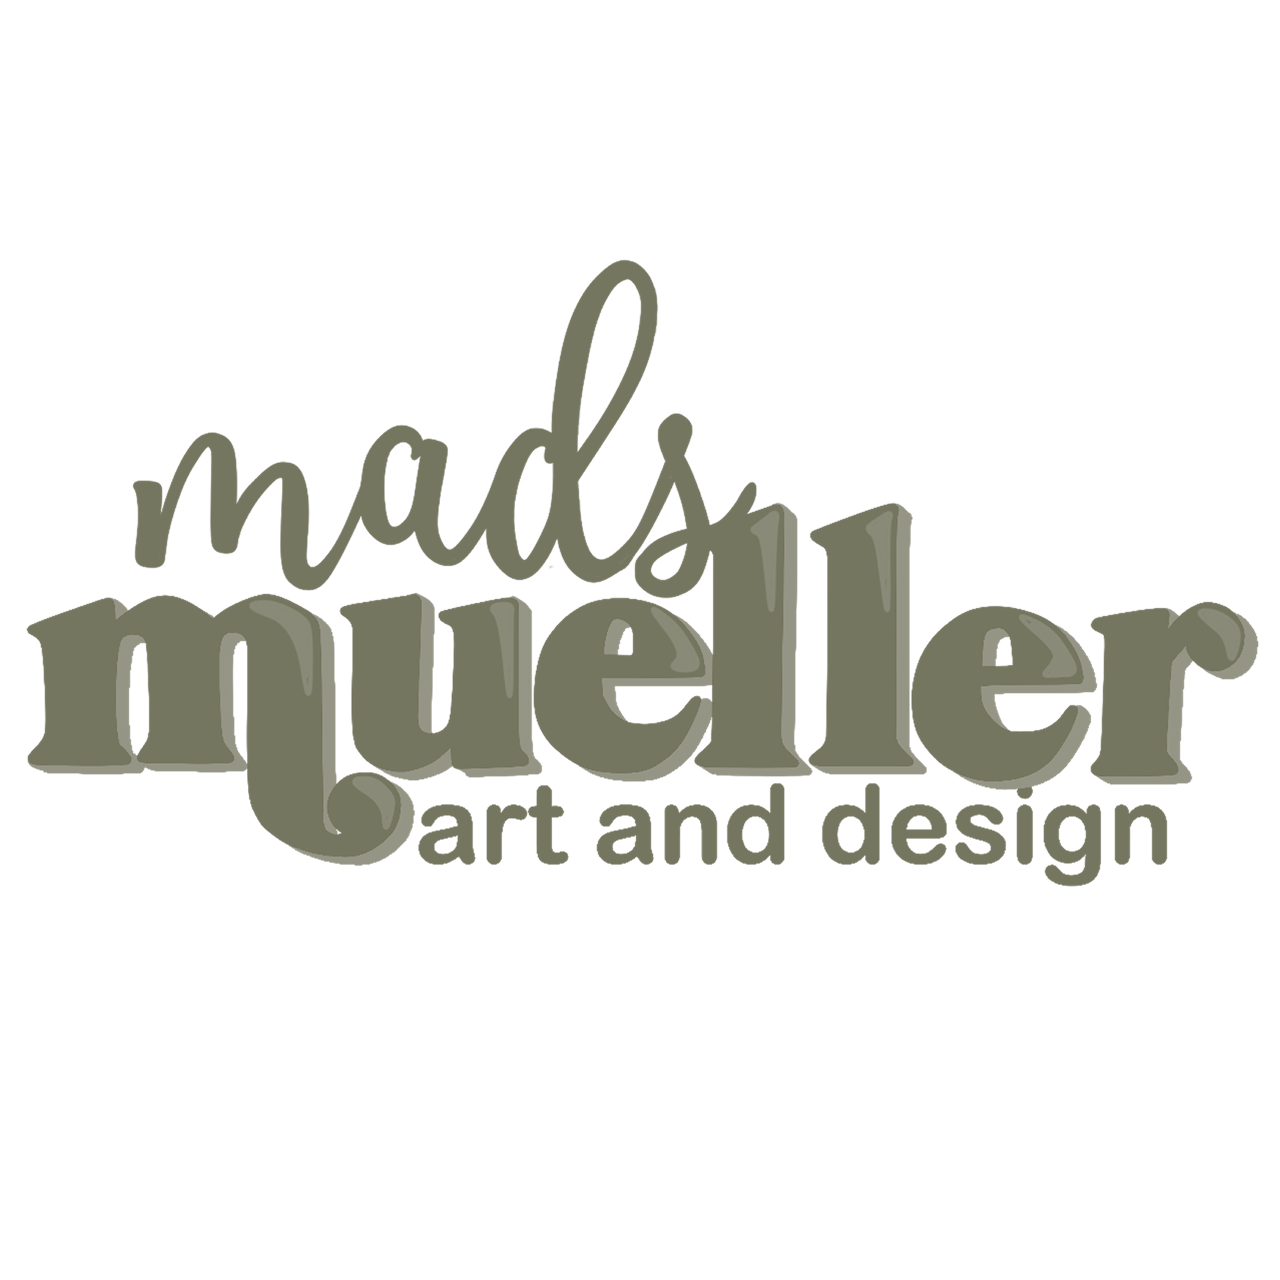 Mads Mueller Art